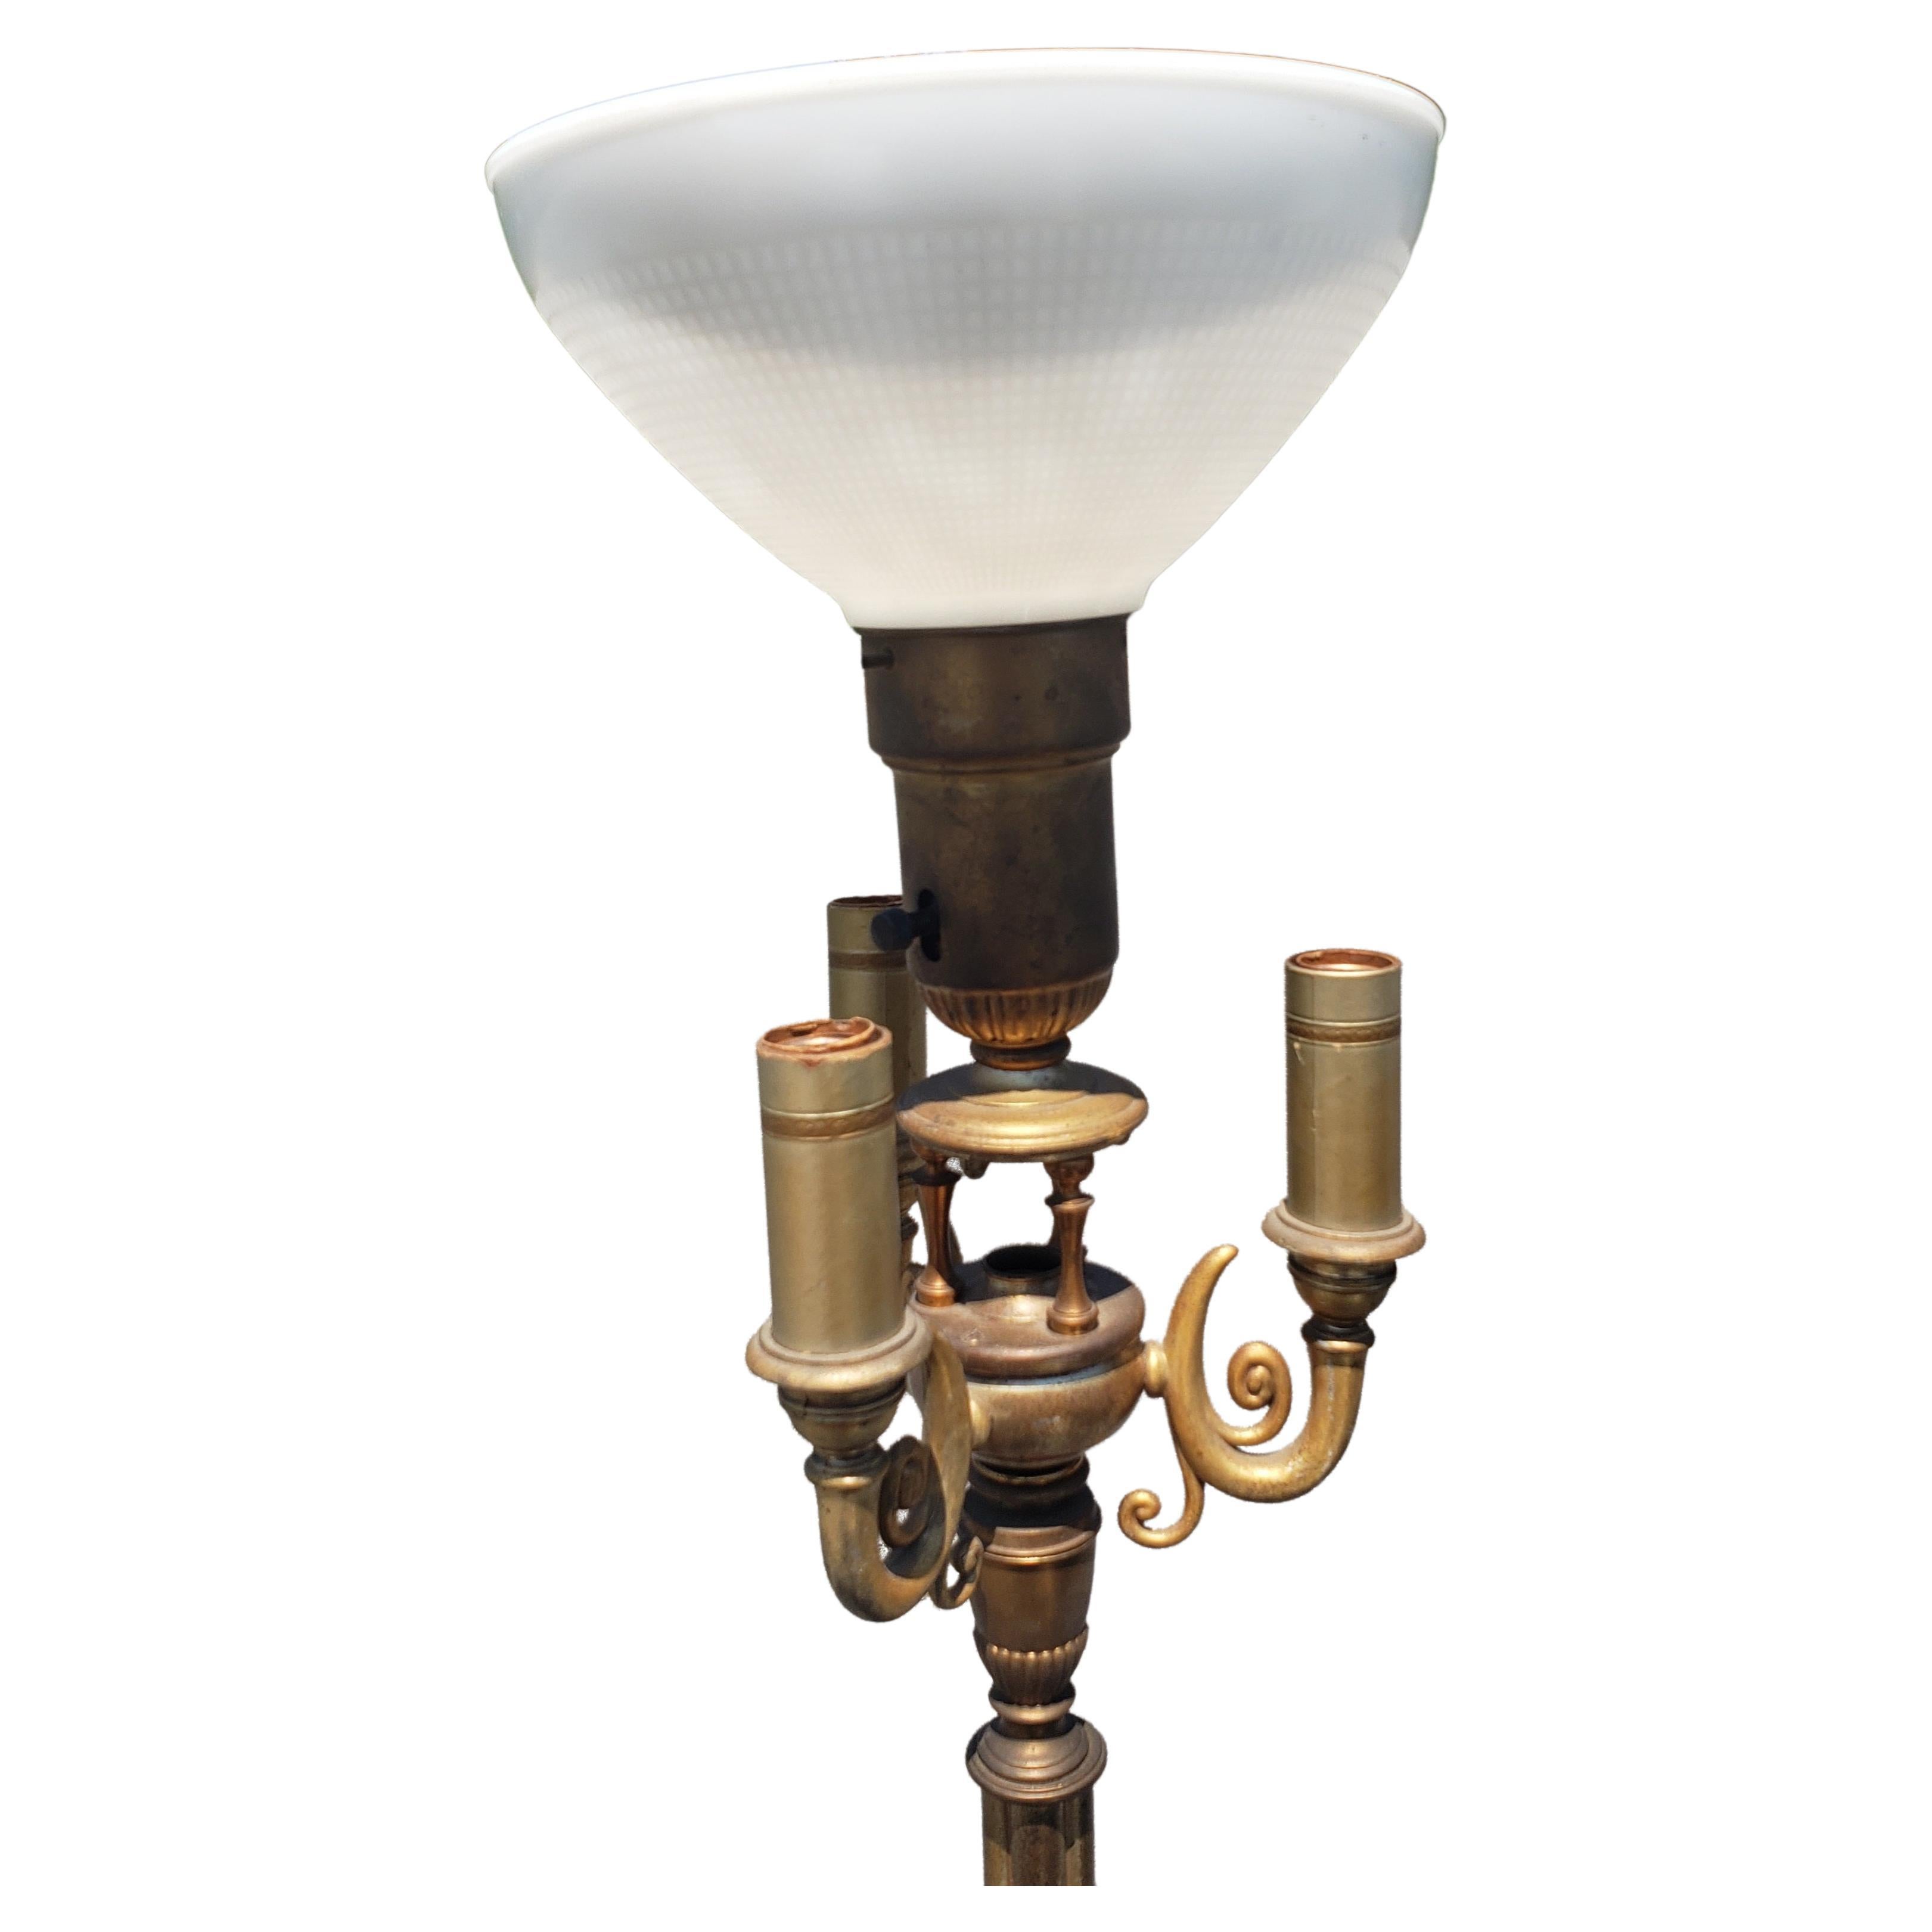 Antike Stehlampe aus patiniertem Metall und Onyx mit 4 Lampen.
Schwere und solide Konstruktion. Maßnahmen 11 Zoll in der Breite und 11 Zoll in der Tiefe an der Basis und steht 60 Zoll hoch an der Spitze des Schattens.